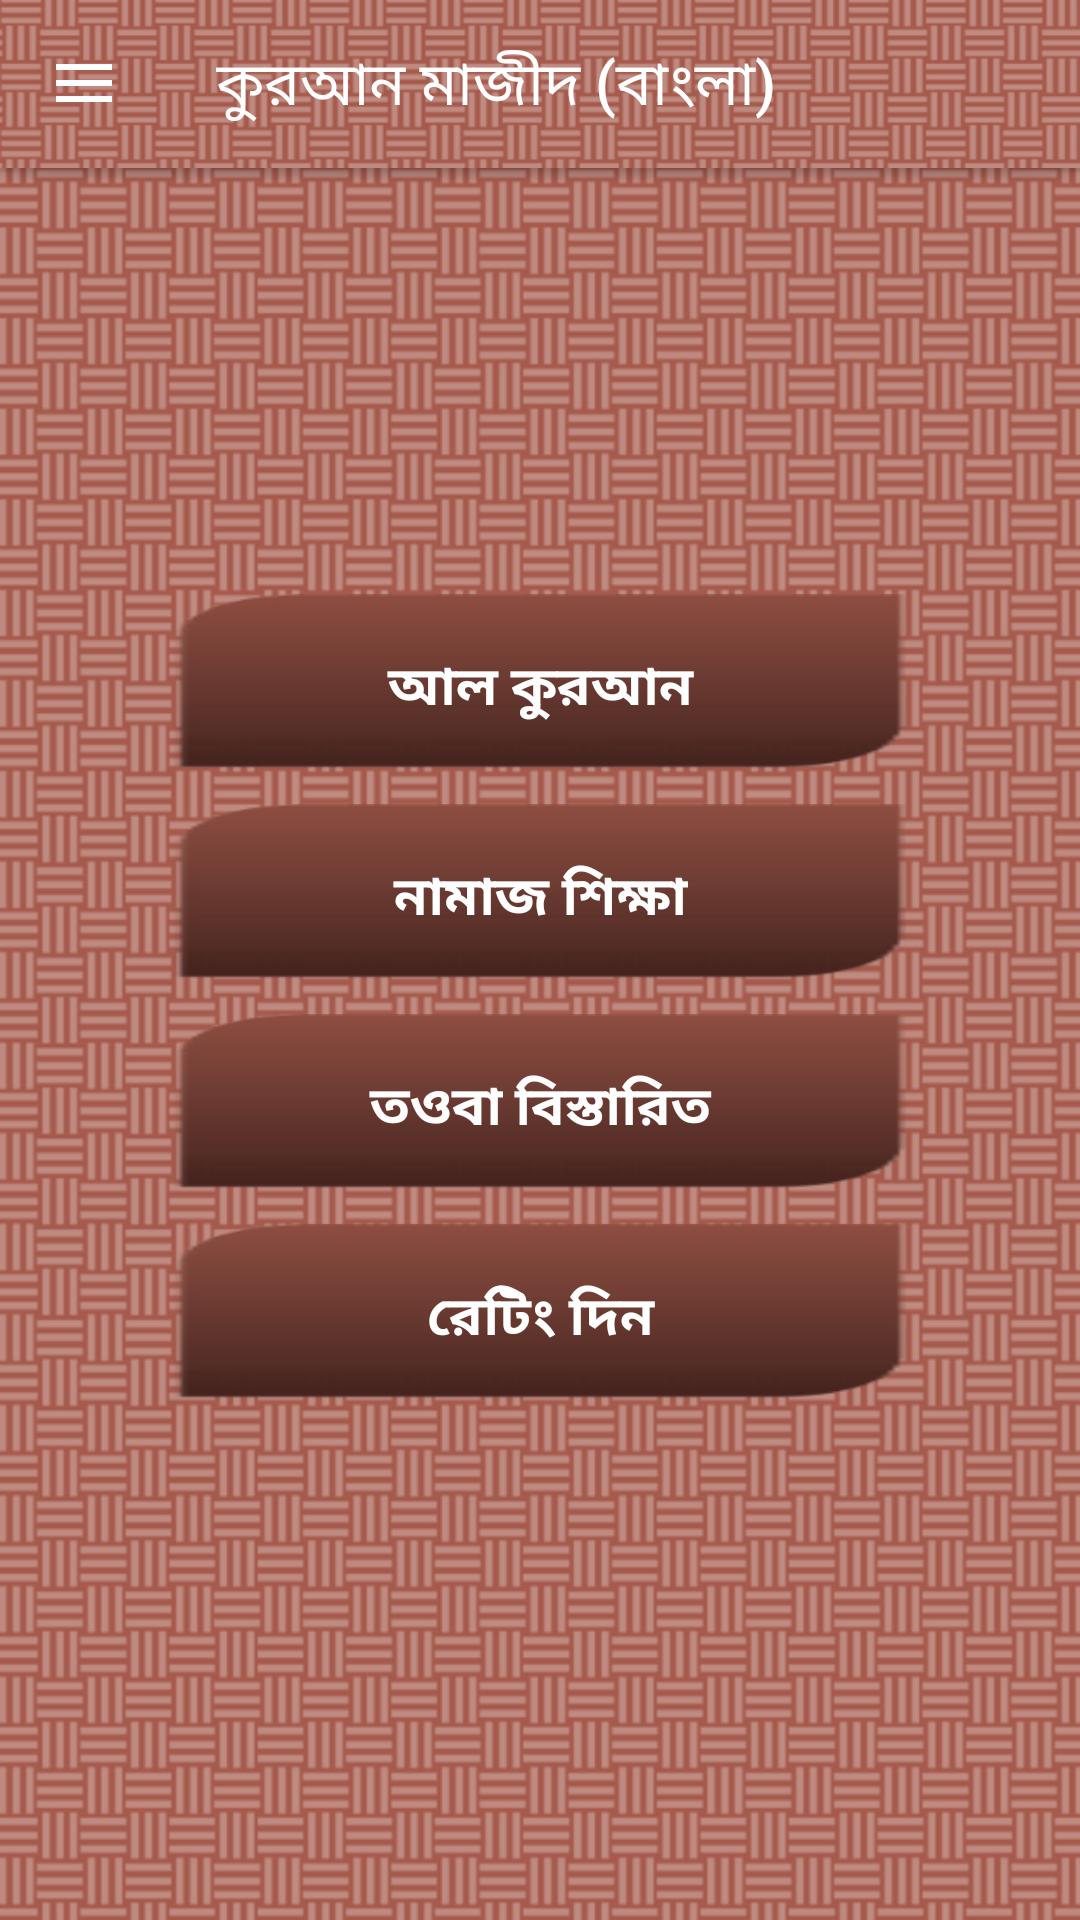 Al-Quran Bangla(Offline Audio) APK for Android Download